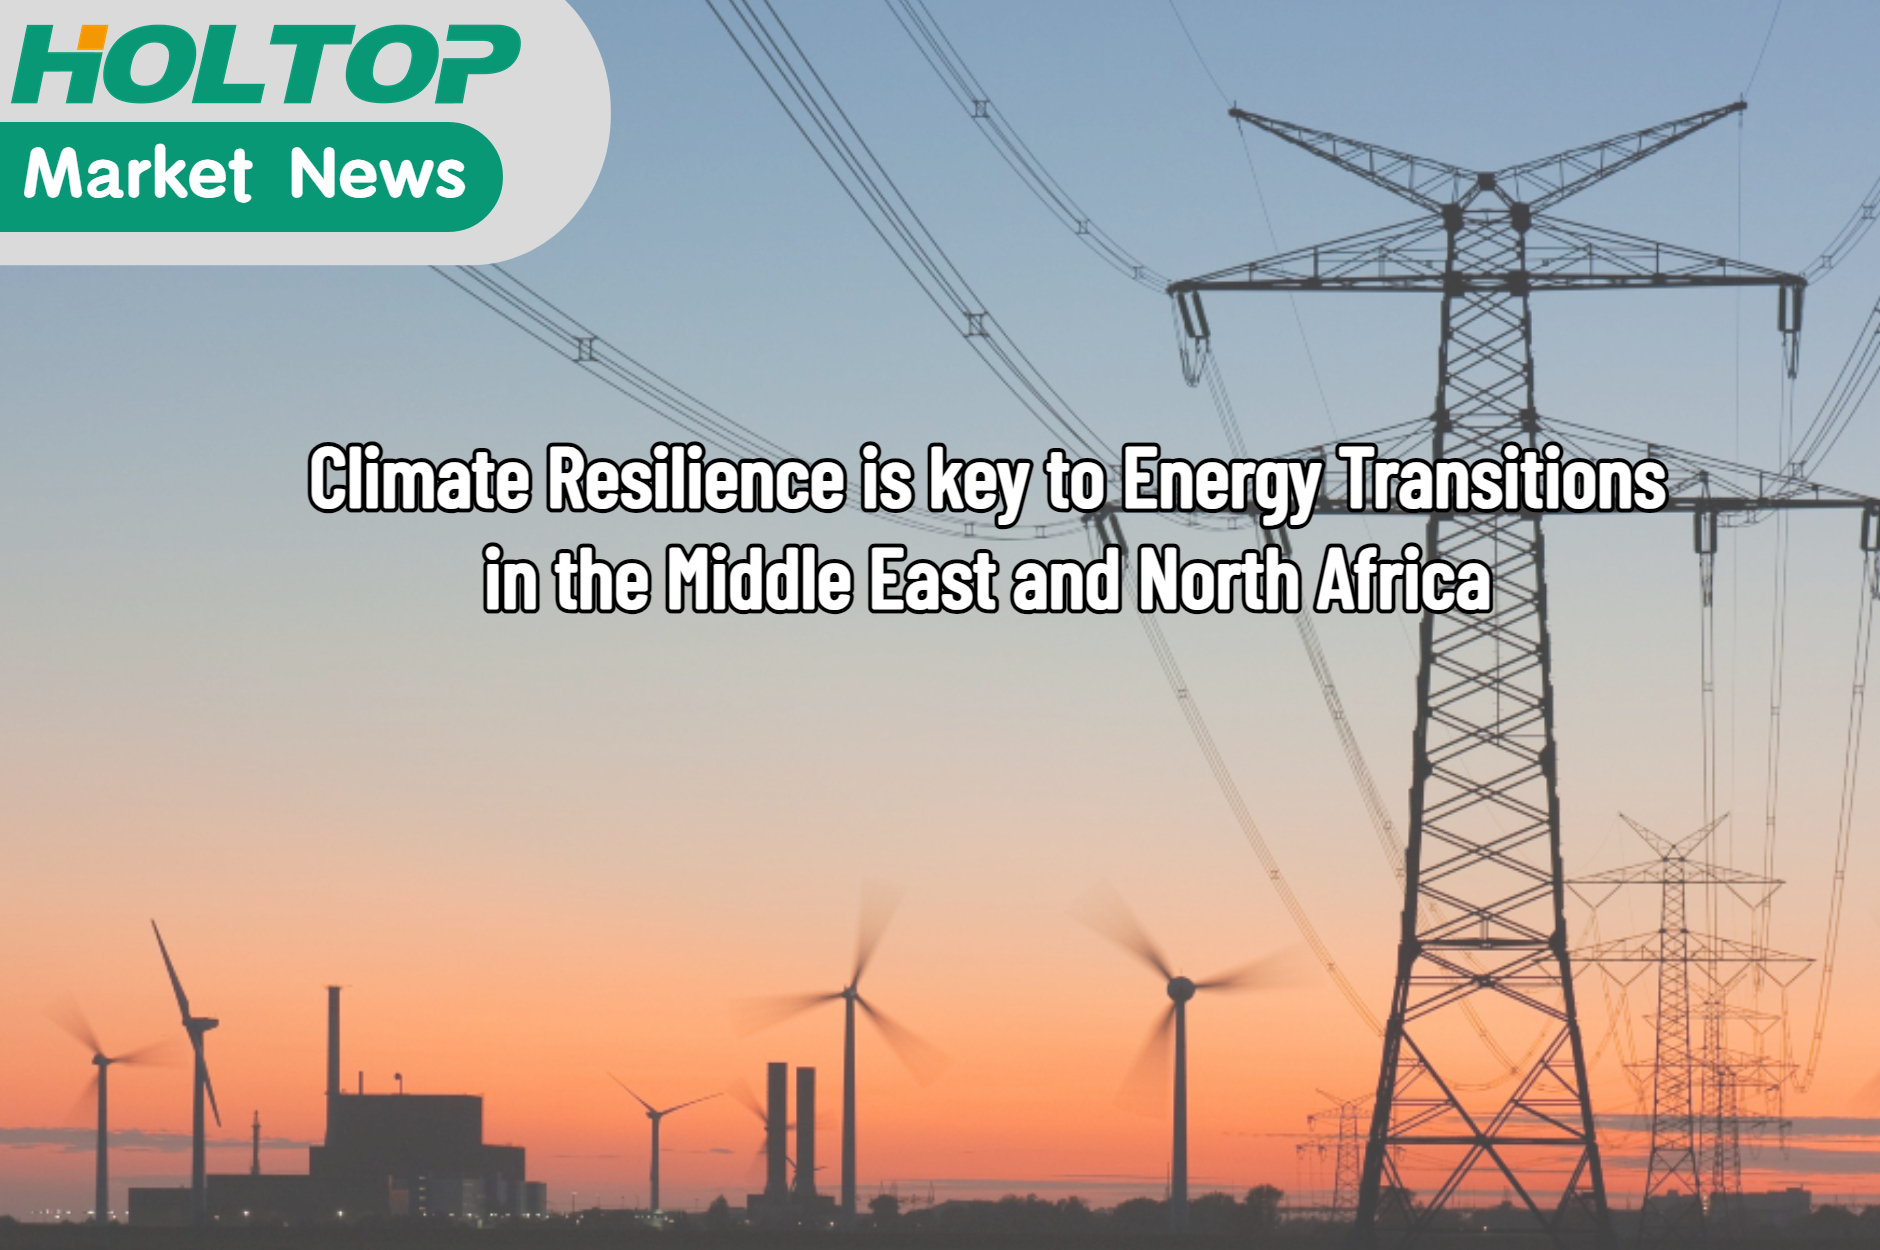 Klimaatbestendigheid is de sleutel tot energietransities in de MENA